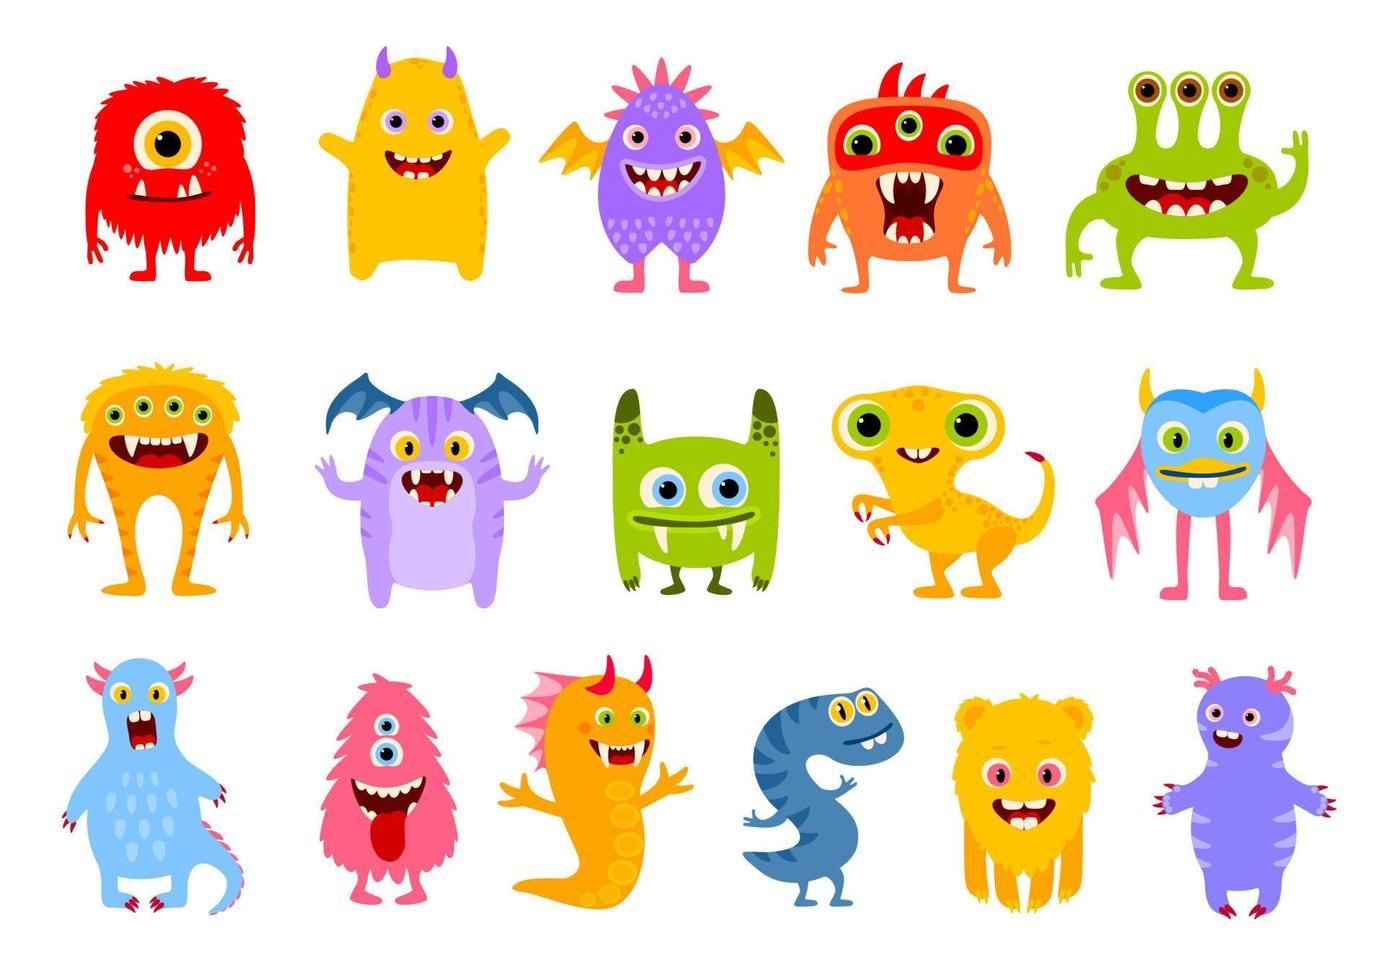 personnages de monstres drôles de dessins animés, personnages mignons vecteur